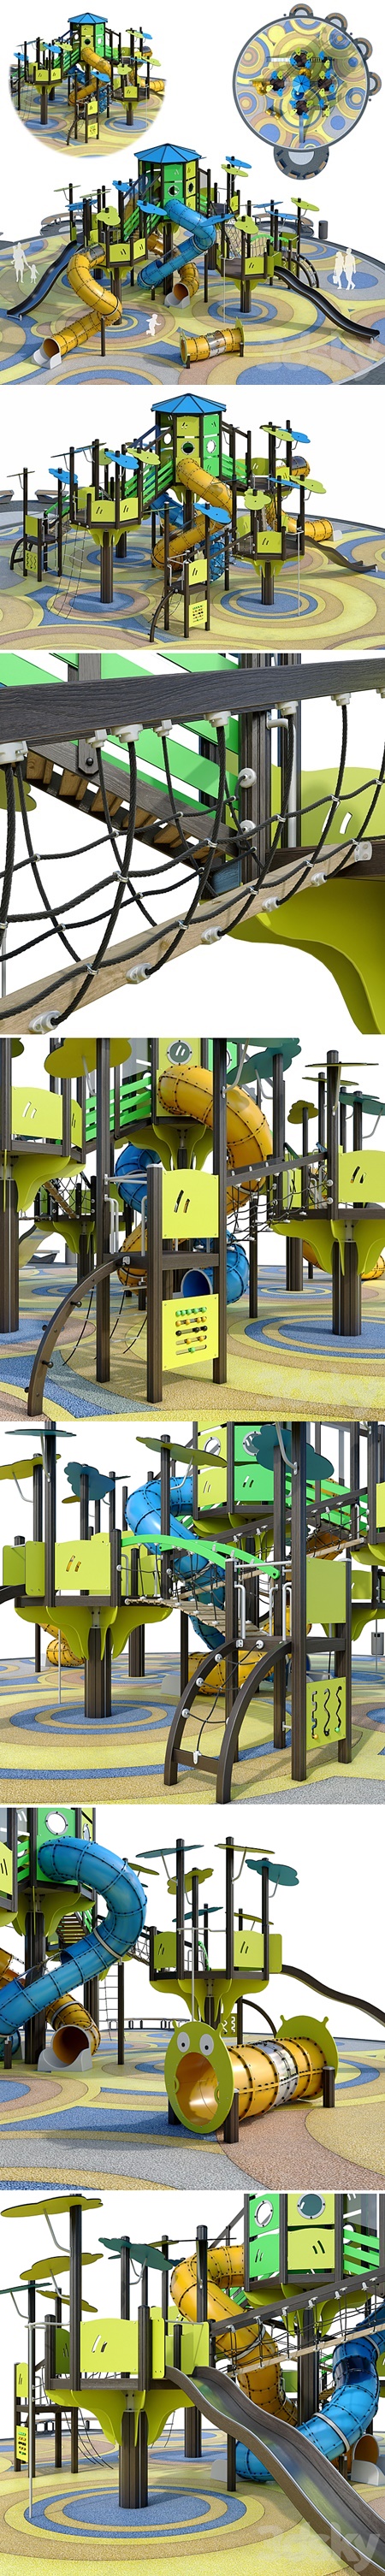 Large children playground. Playground